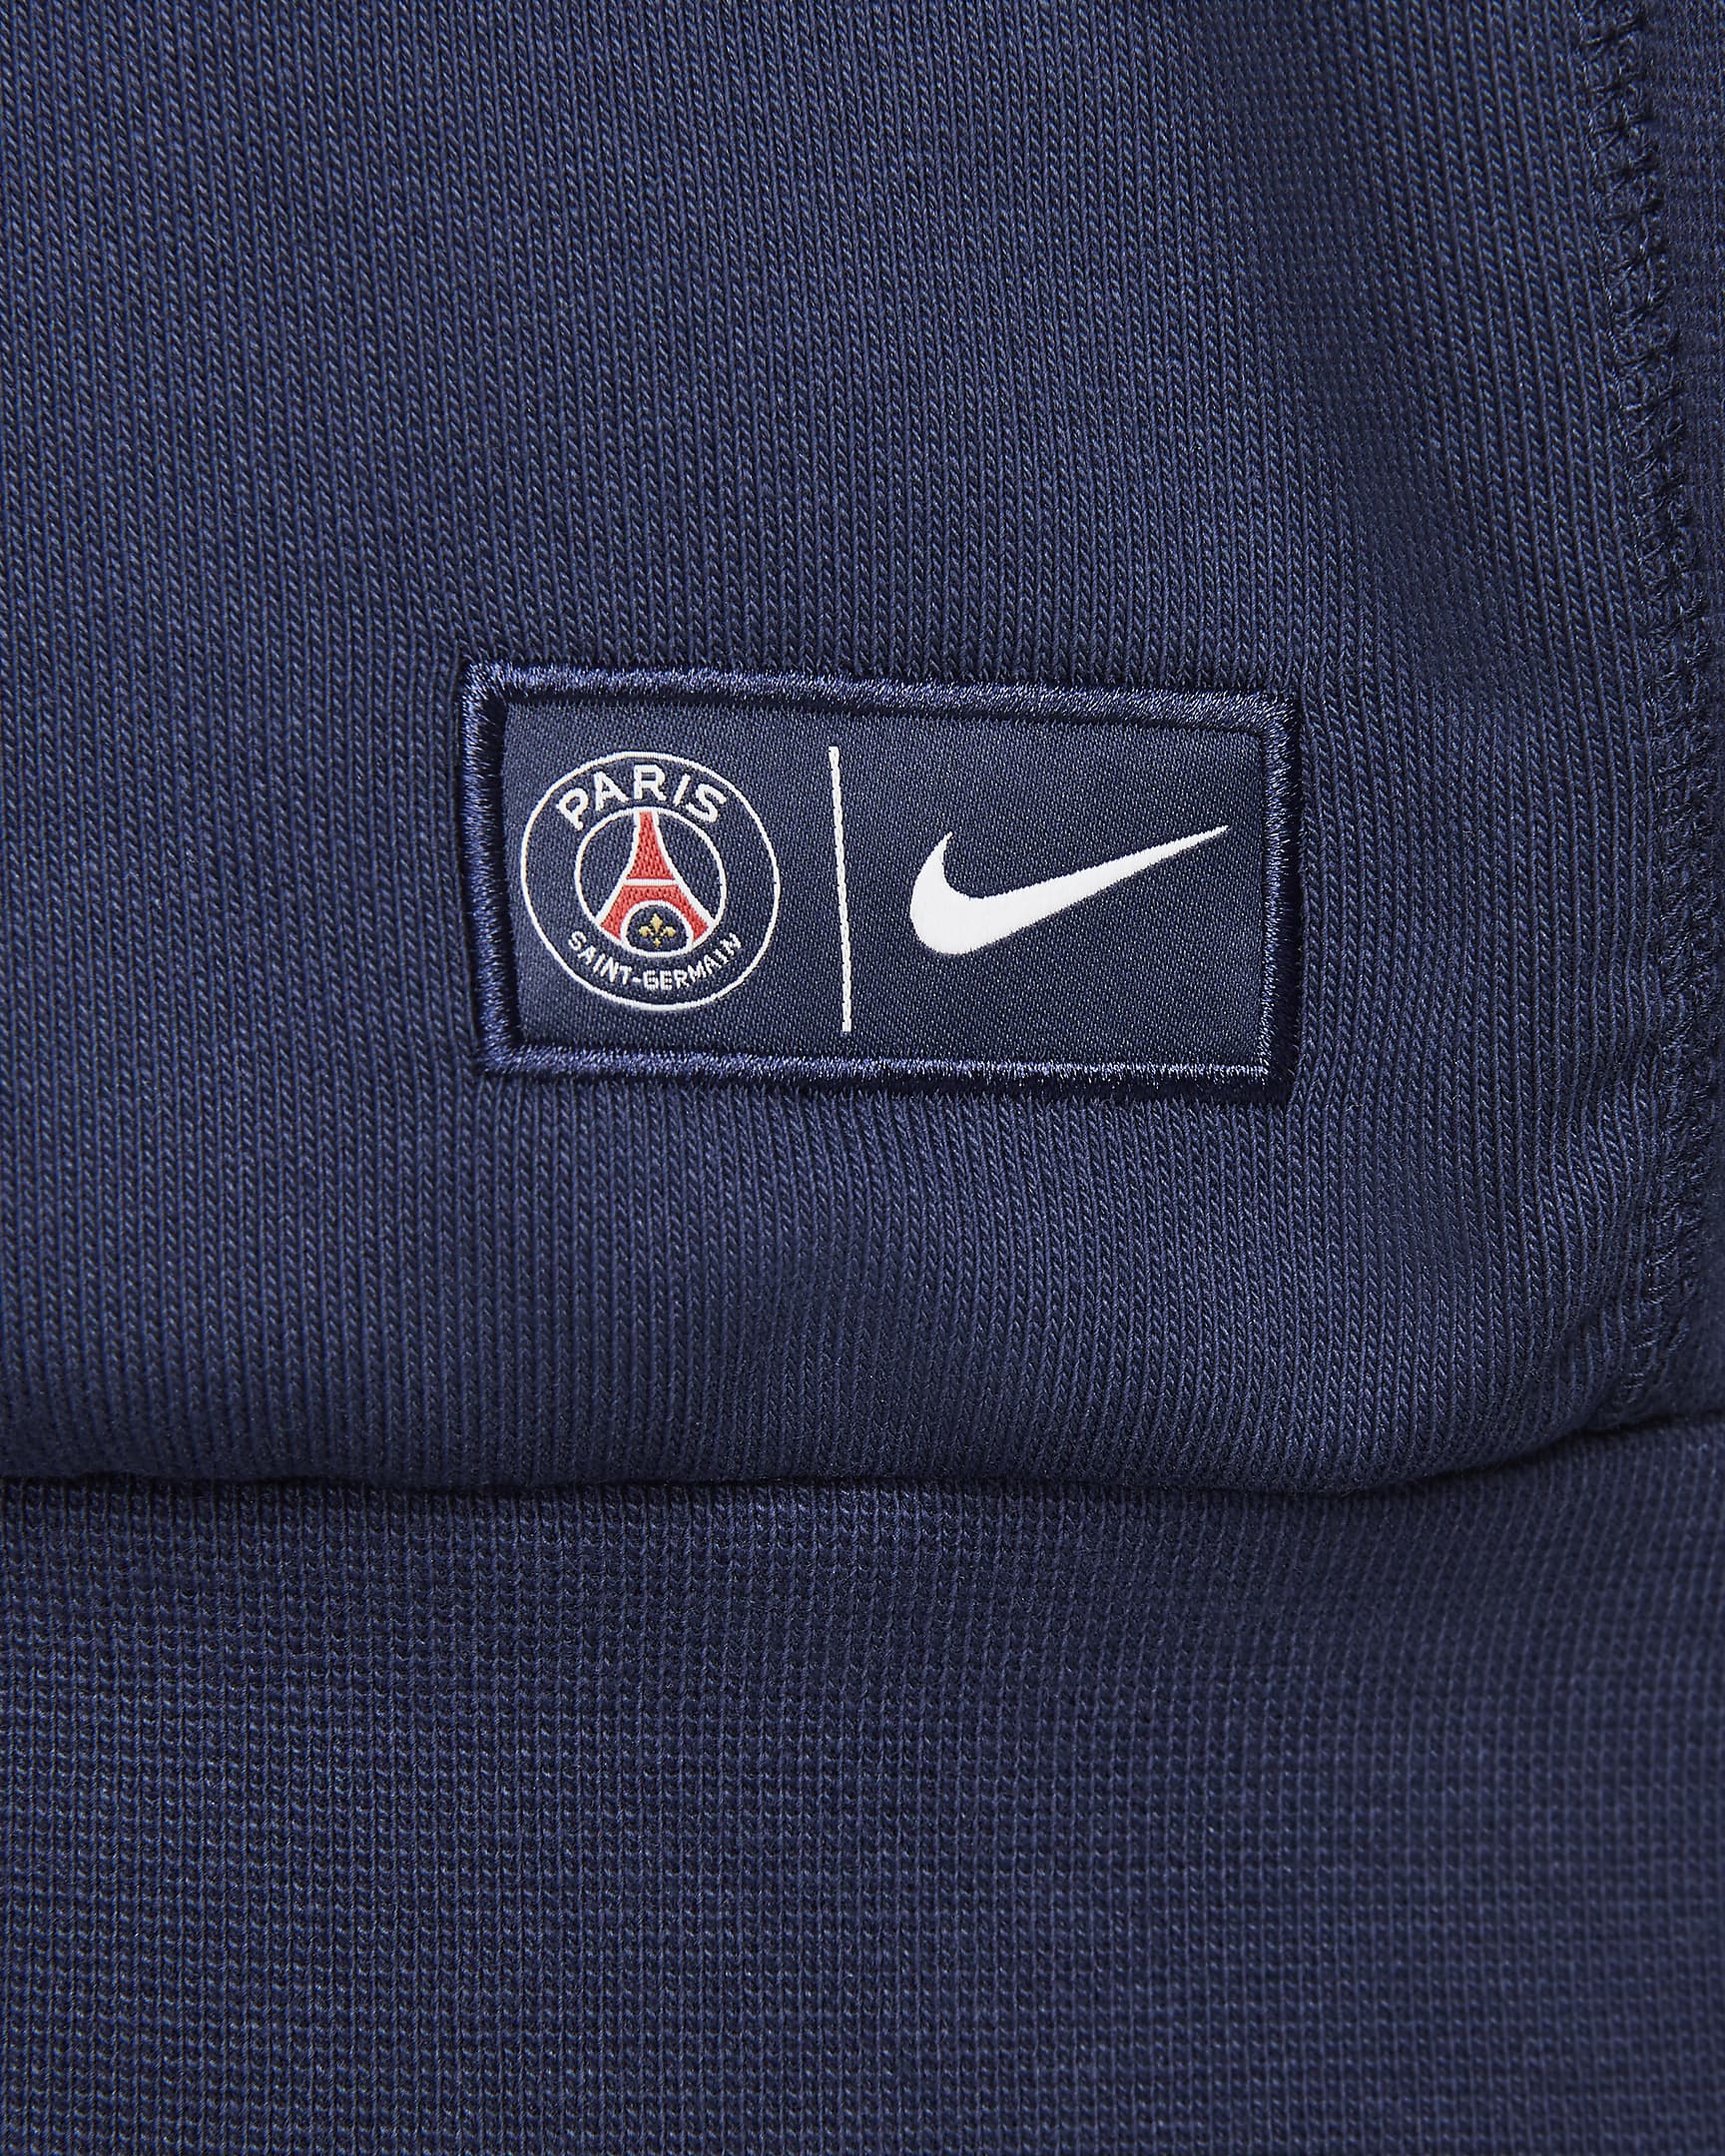 Paris Saint-Germain Standard Issue Men's Nike Football Pullover Hoodie ...